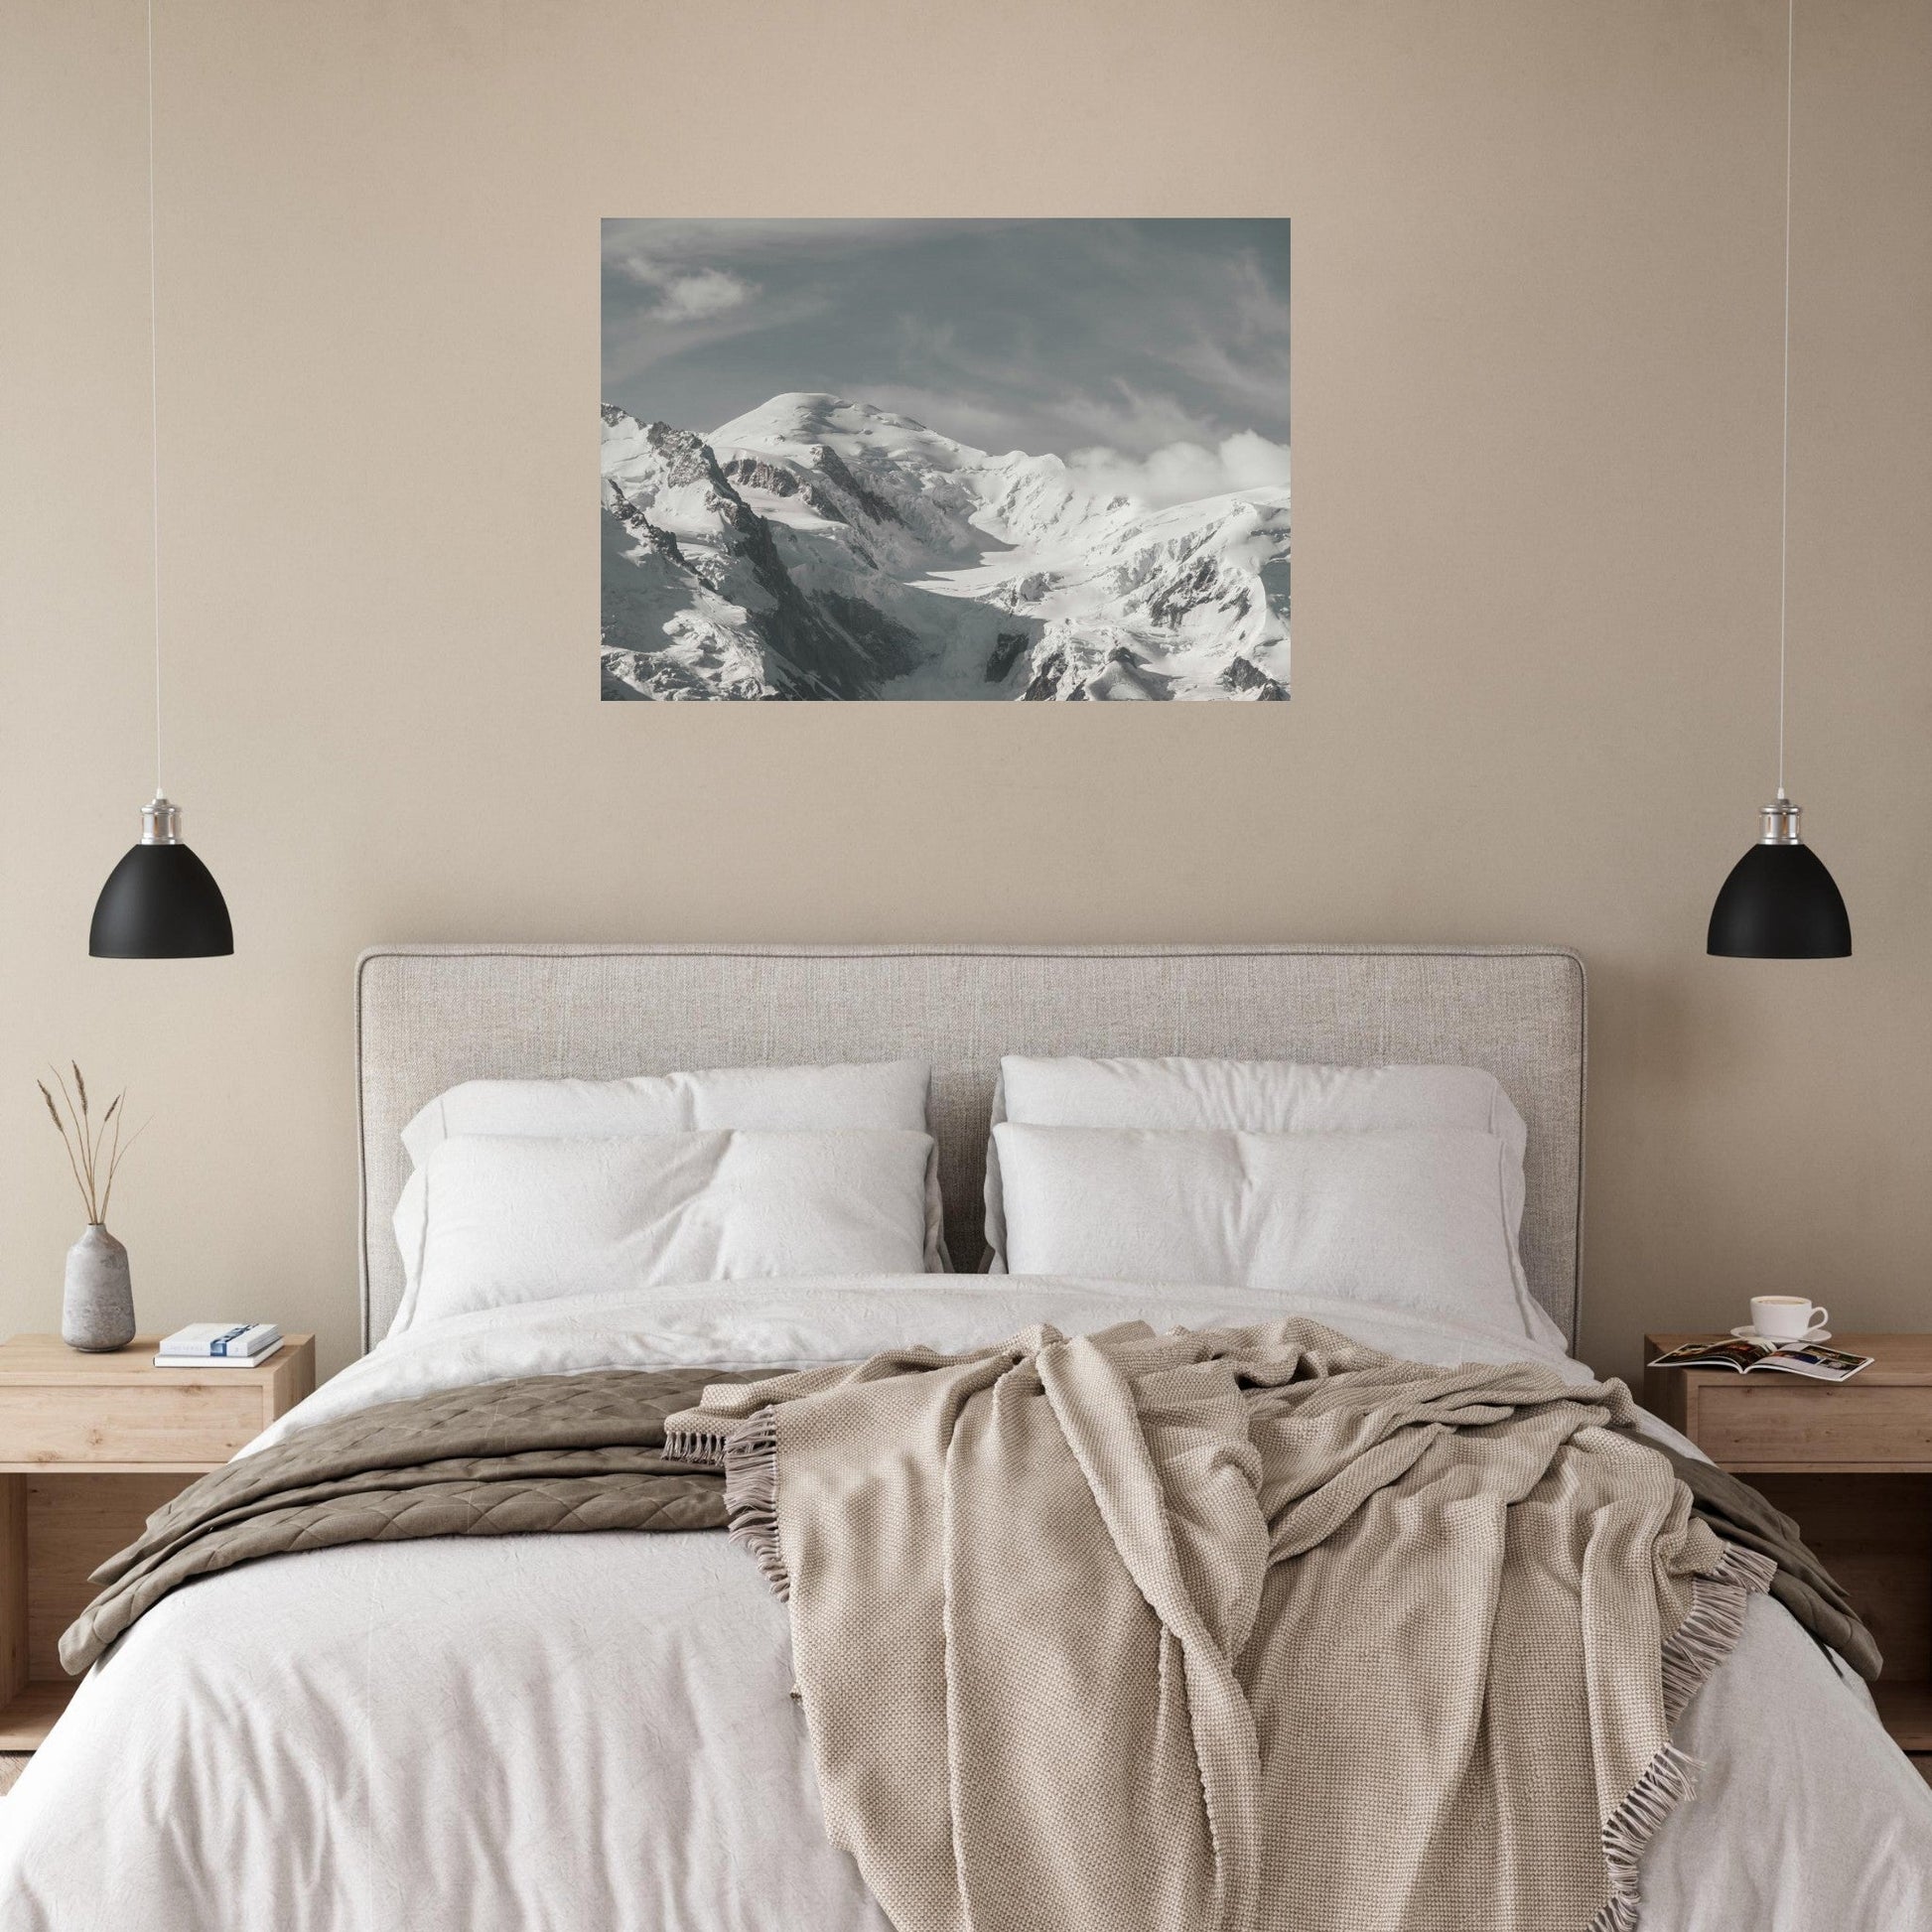 Vente Photo du Mont-Blanc - Noir & Blanc - Tableau photo alu montagne